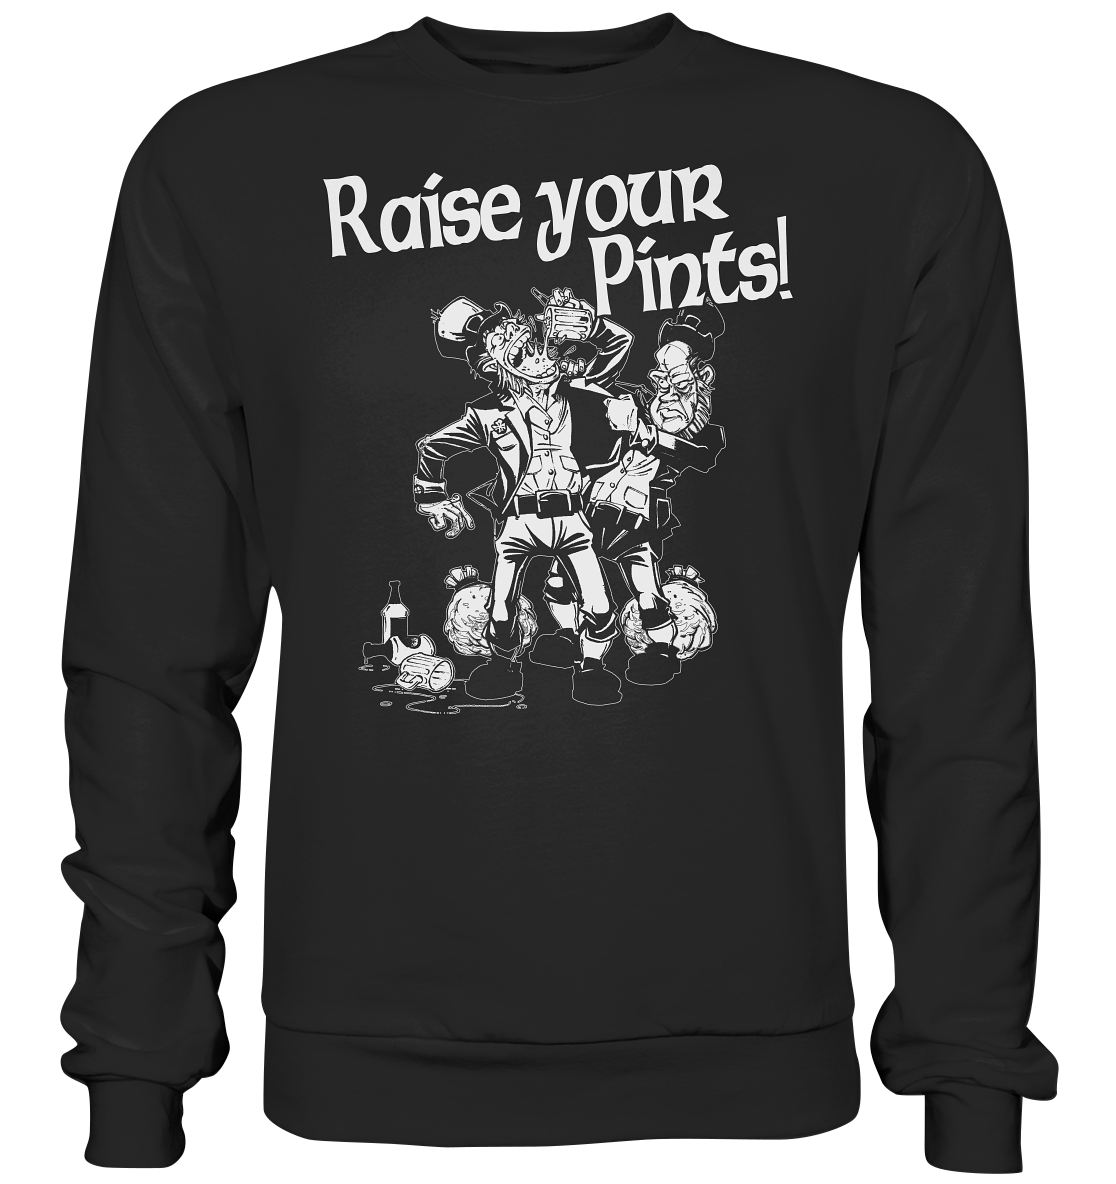 Raise Your Pints "Leprechauns" - Premium Sweatshirt